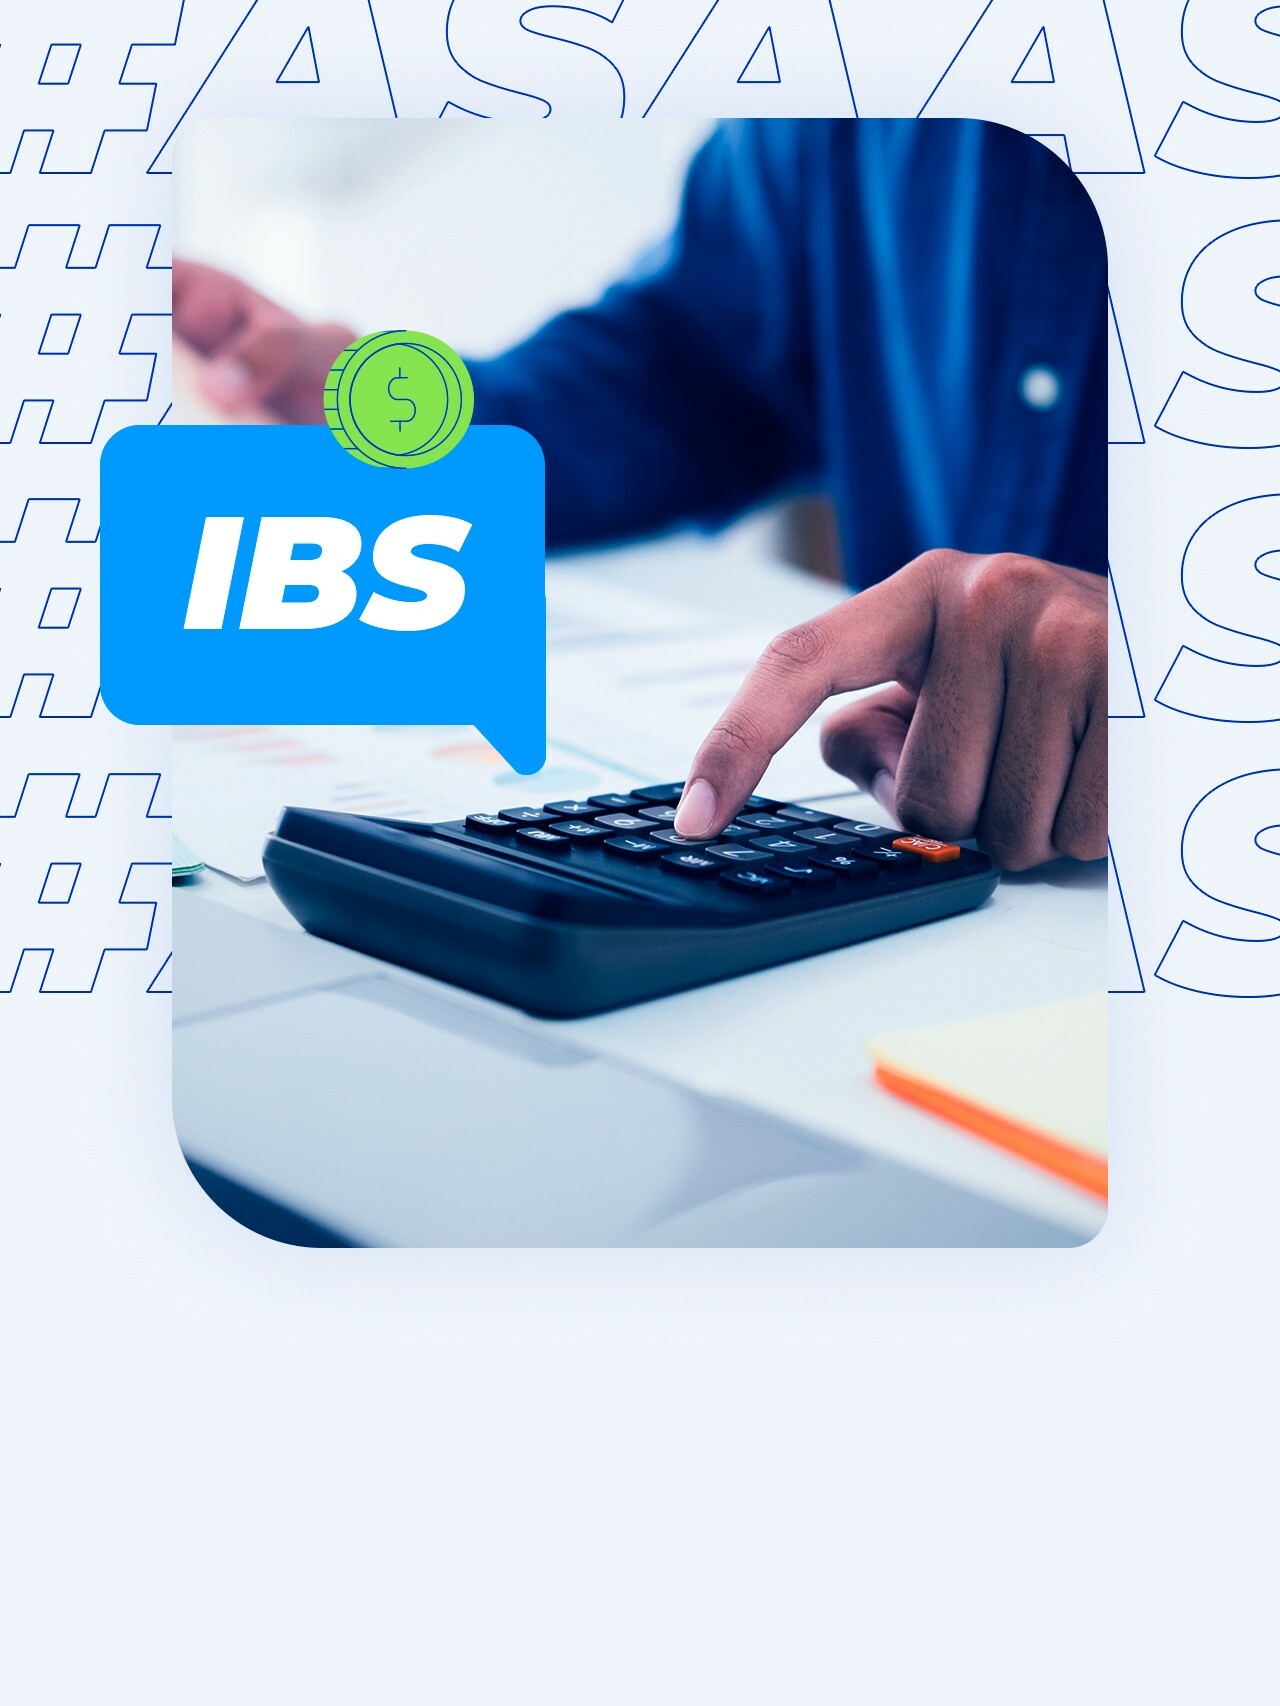 Imposto IBS: entenda o novo imposto e suas implicações